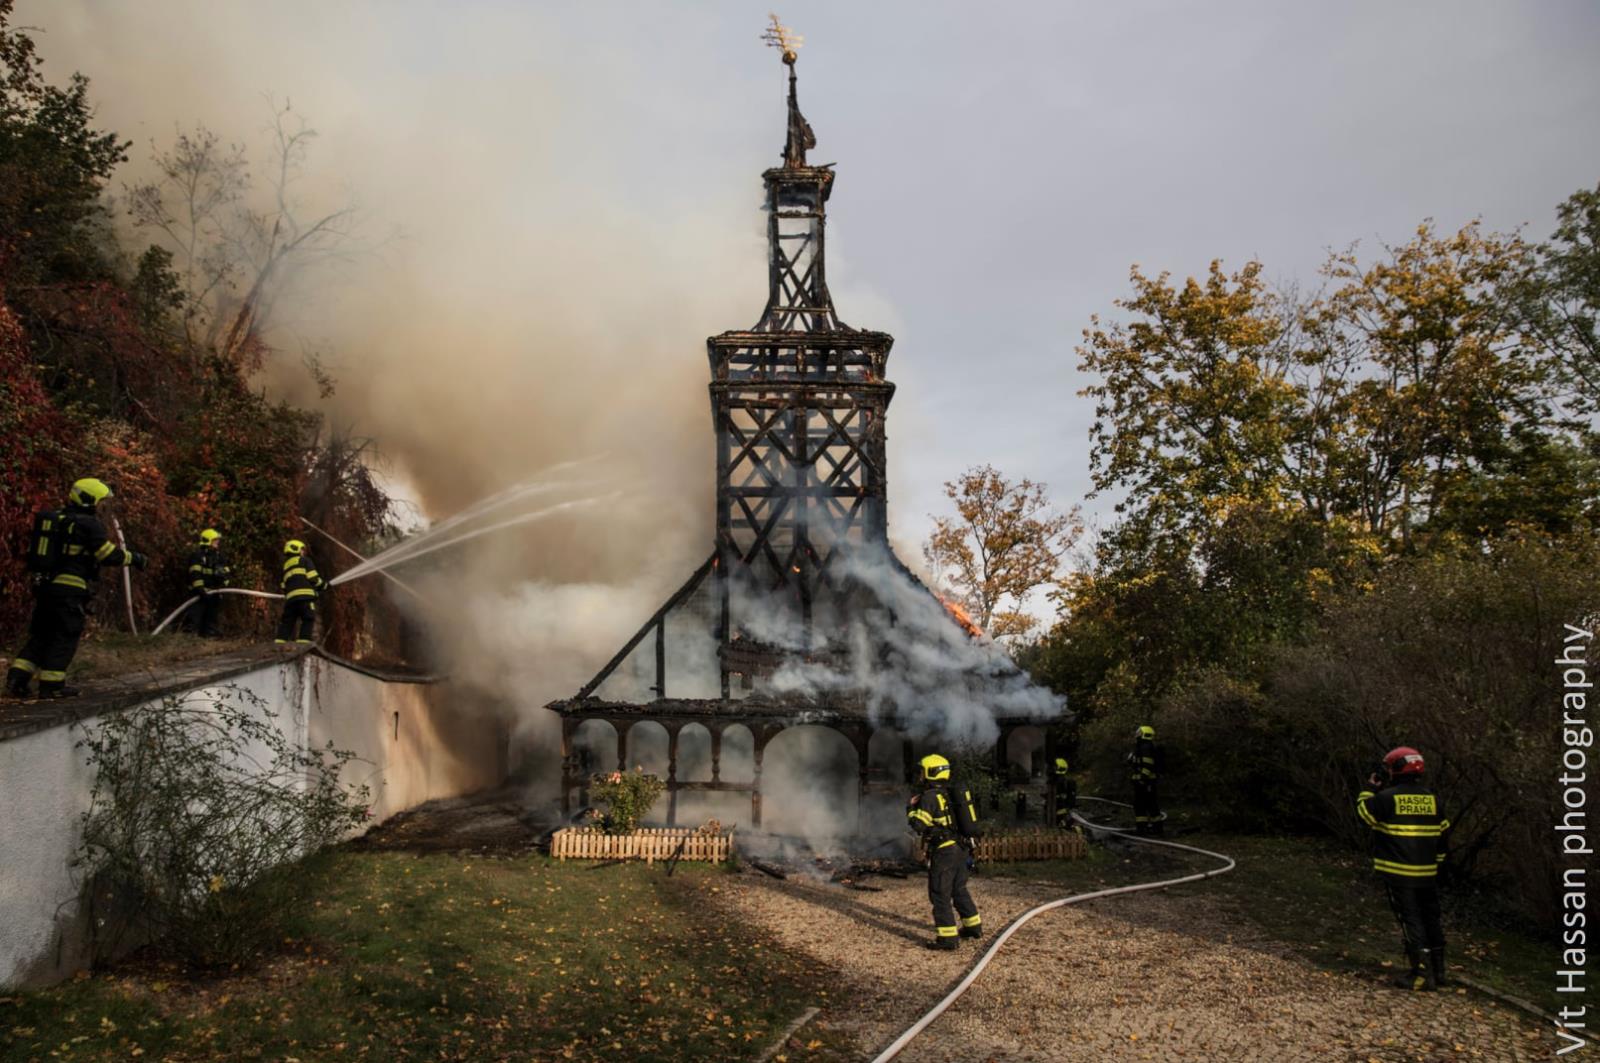 PHA_Požár kostela sv. Michaela_celkový pohled na ohořelý kostel a hasiče, kteří u požáru zasahují.jpg